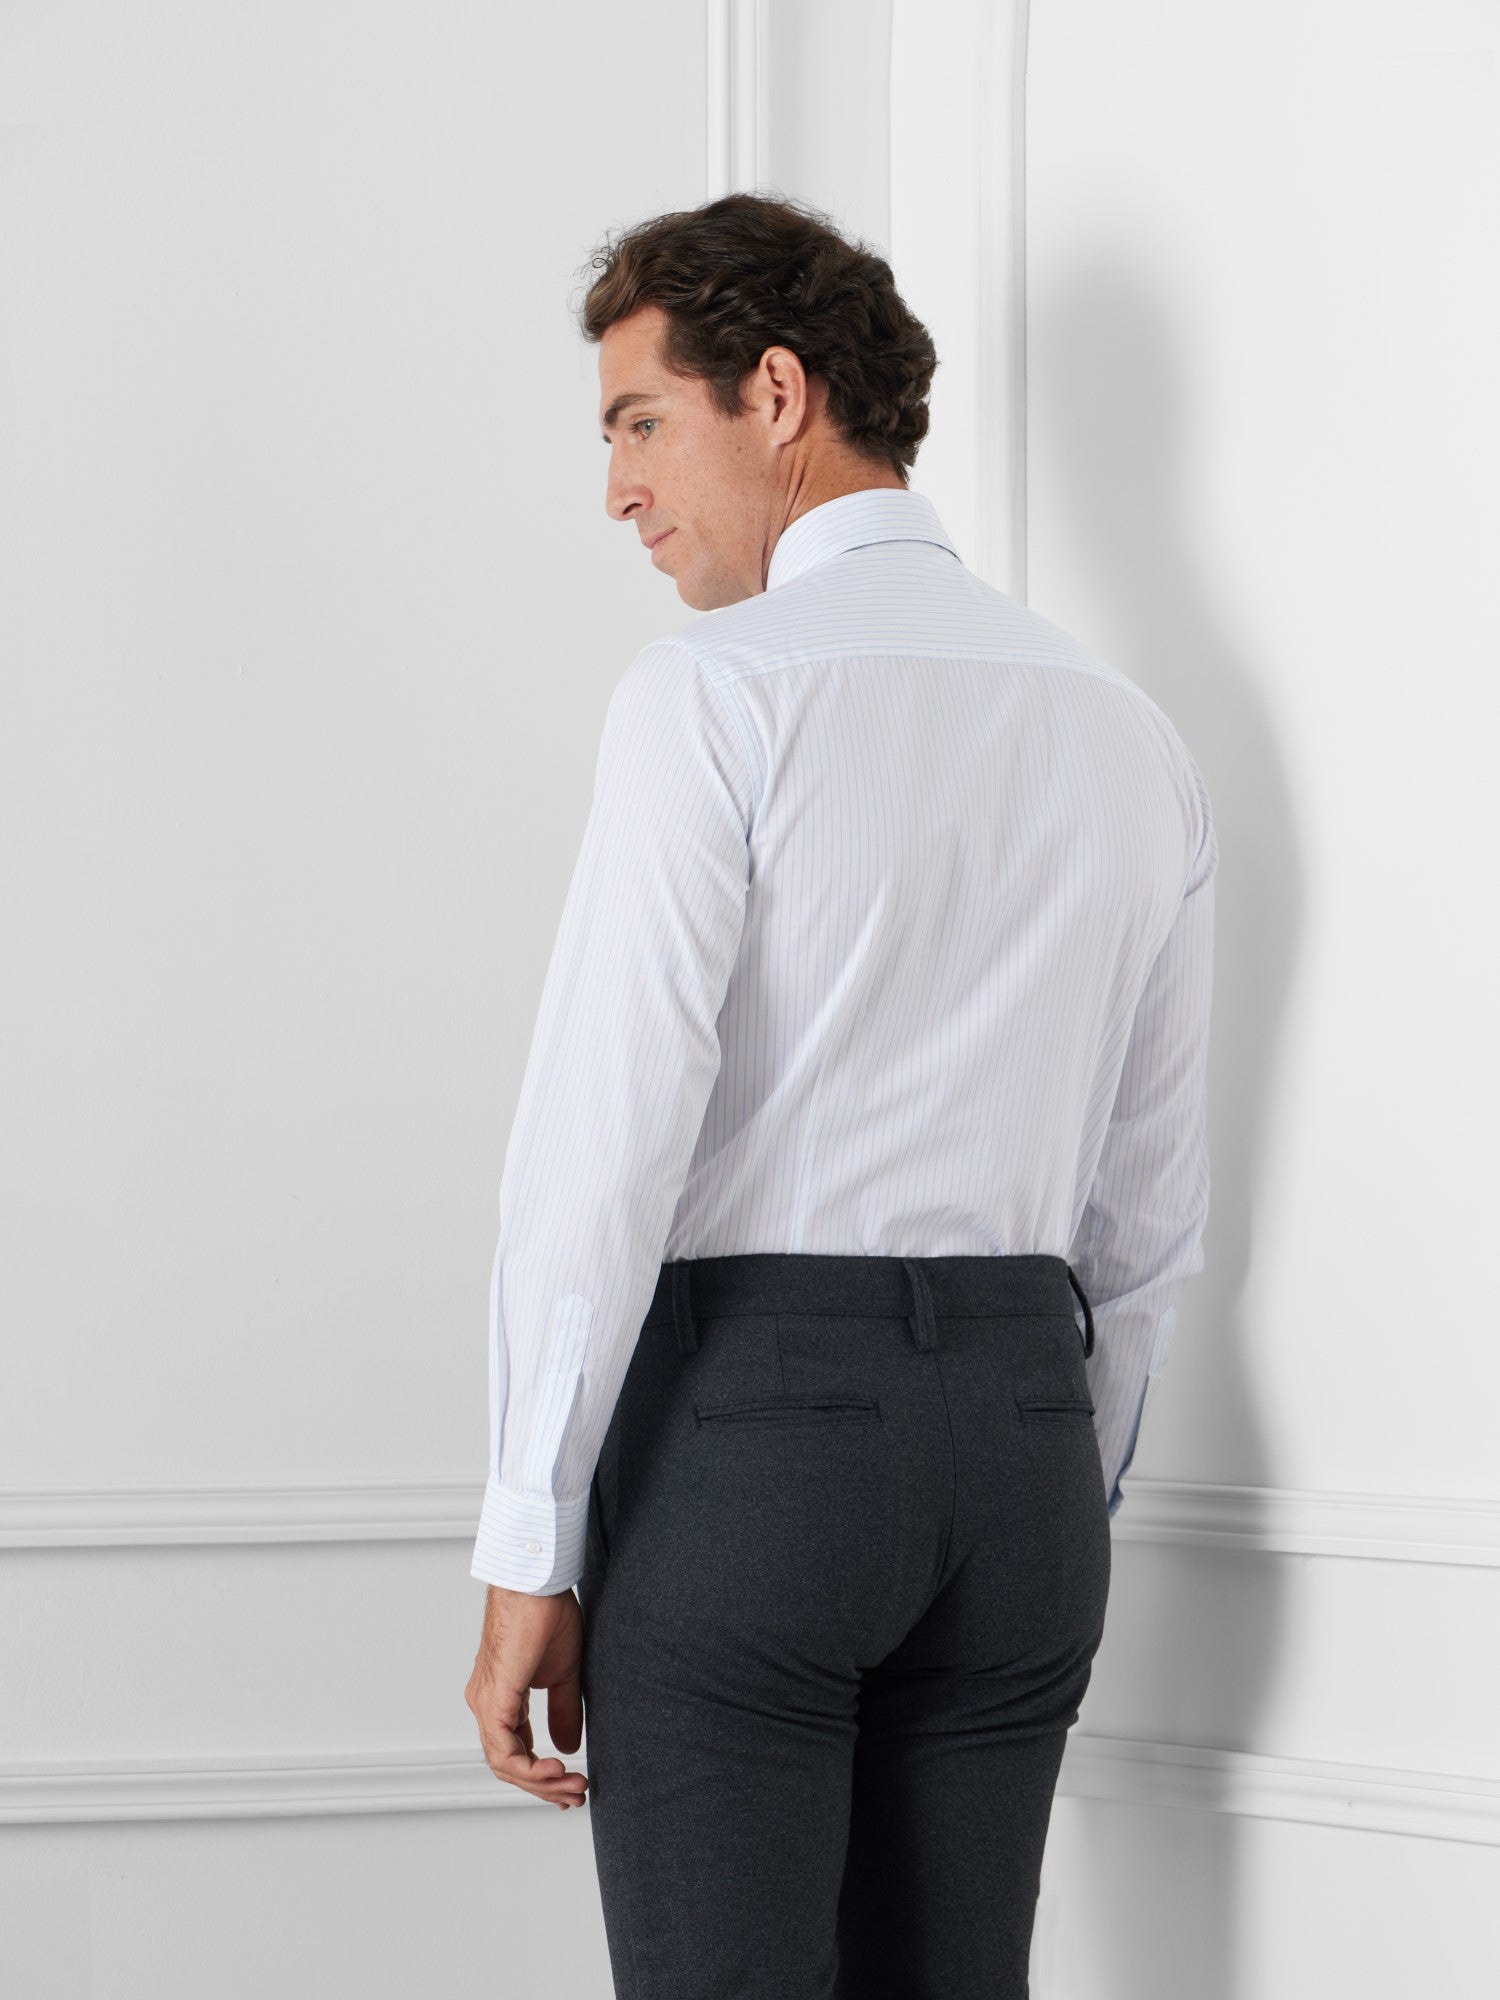 Pantalon vestir unique pinzas prolonga gris